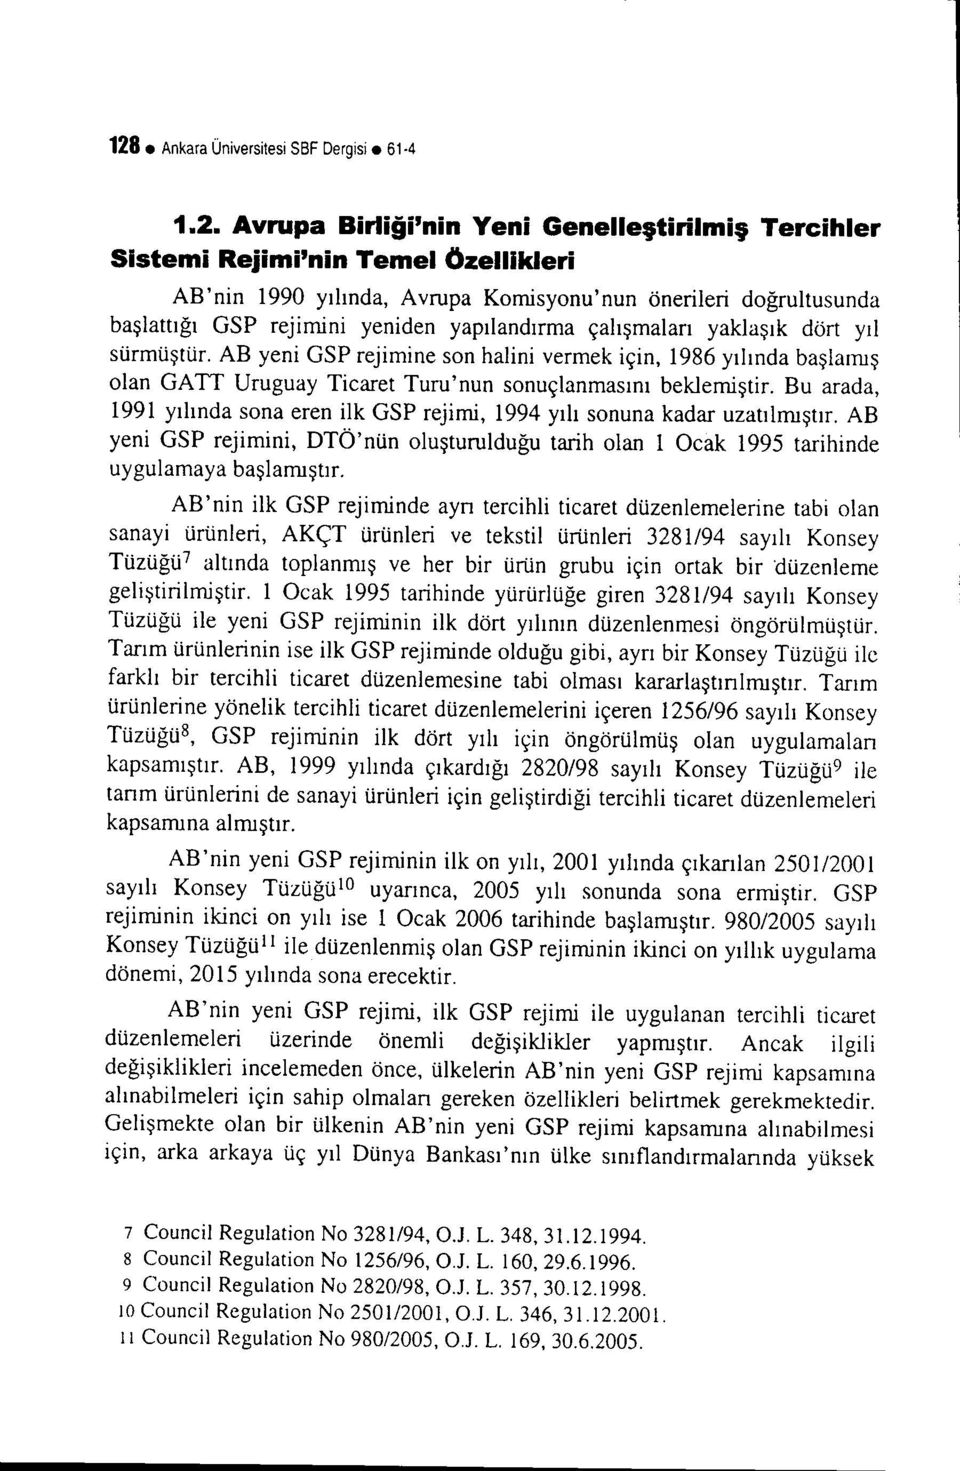 AB yeni GSP rejimine son halini vermek için, 1986 yılında başlamış olan GATI Uruguay Ticaret Turu'nun sonuçlanmasını beklemiştir.